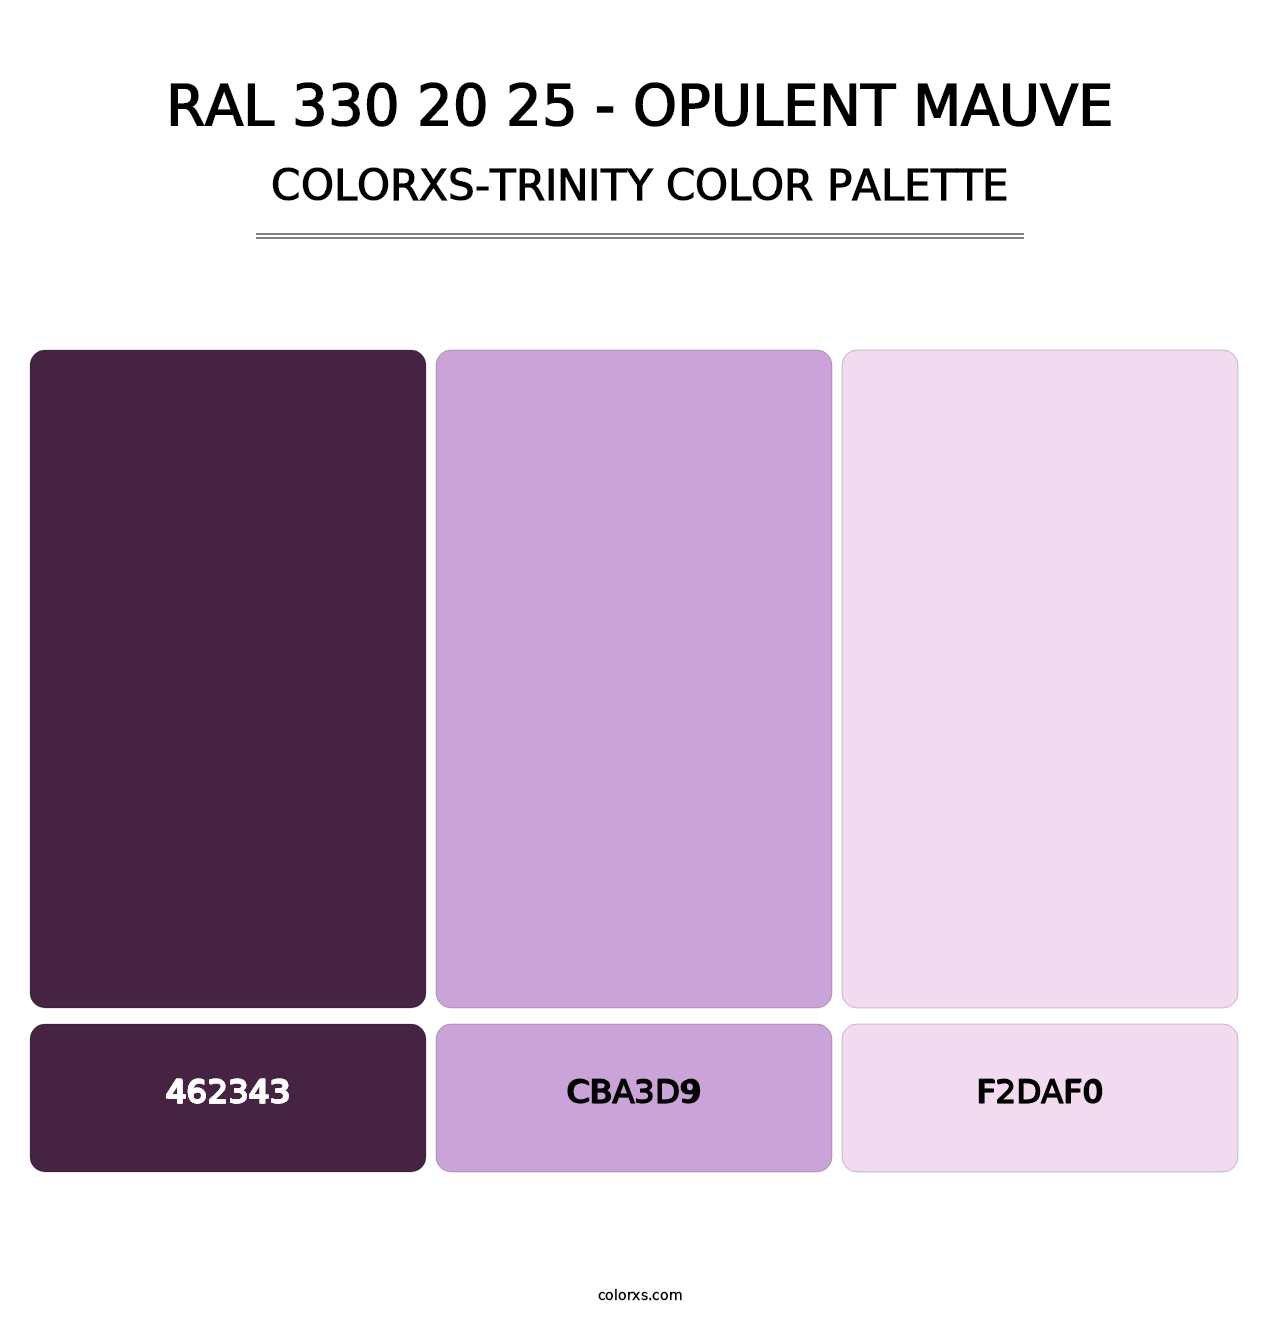 RAL 330 20 25 - Opulent Mauve - Colorxs Trinity Palette